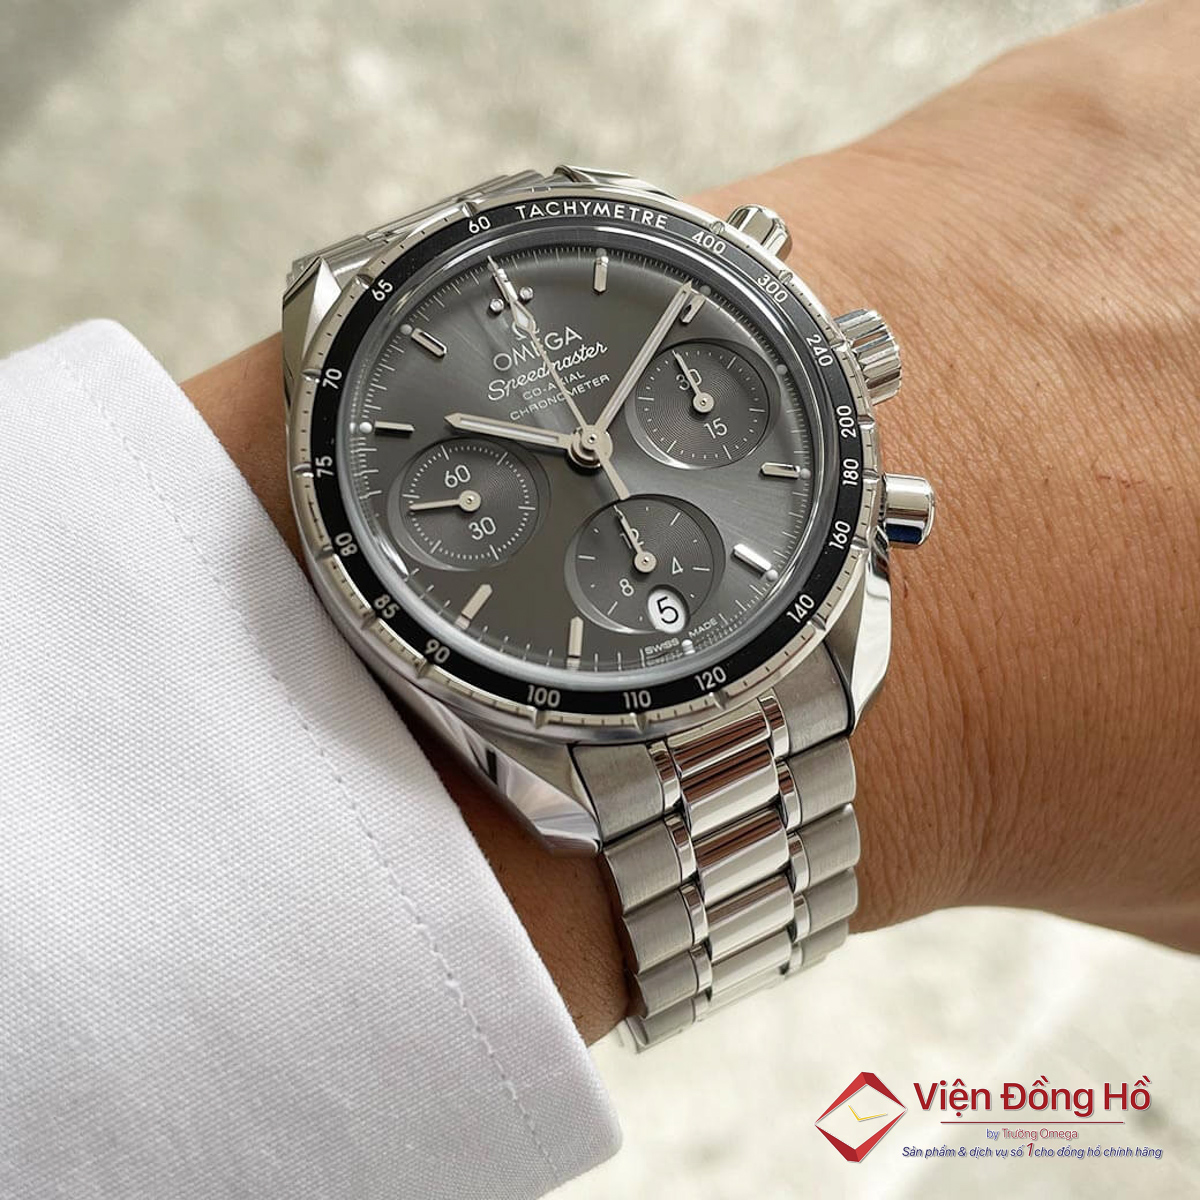 Đồng hồ Omega Trung Quốc bị những nhà sản xuất ở đây “mượn” thiết kế của hãng rồi làm ra những mẫu đồng hồ y hệt về kiểu dáng